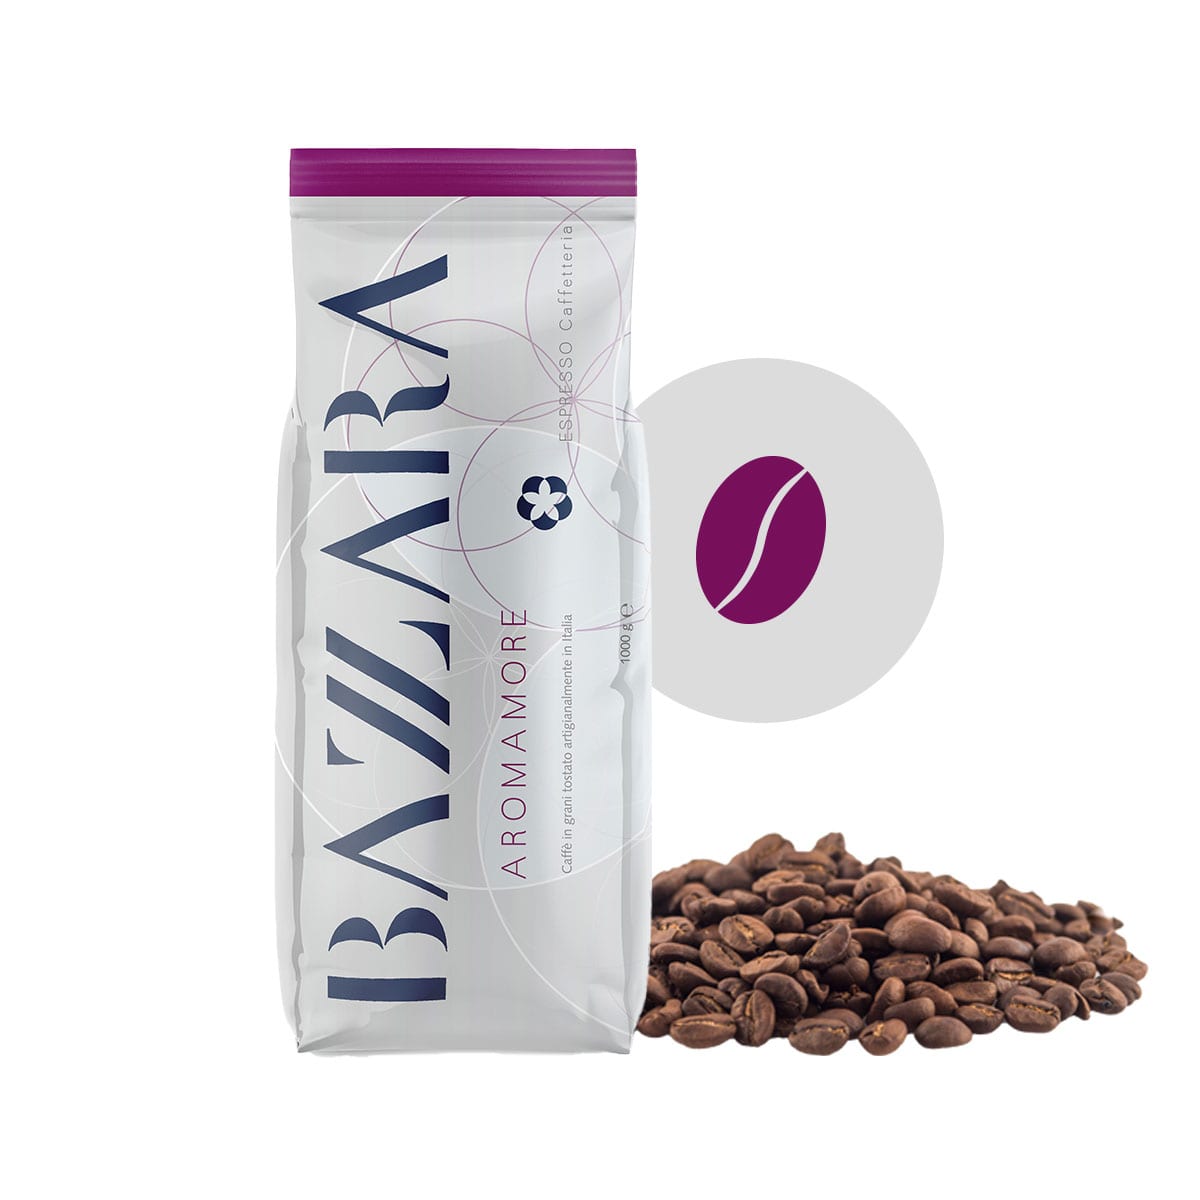 Cafea boabe Bazzara Aromamore, 1kg